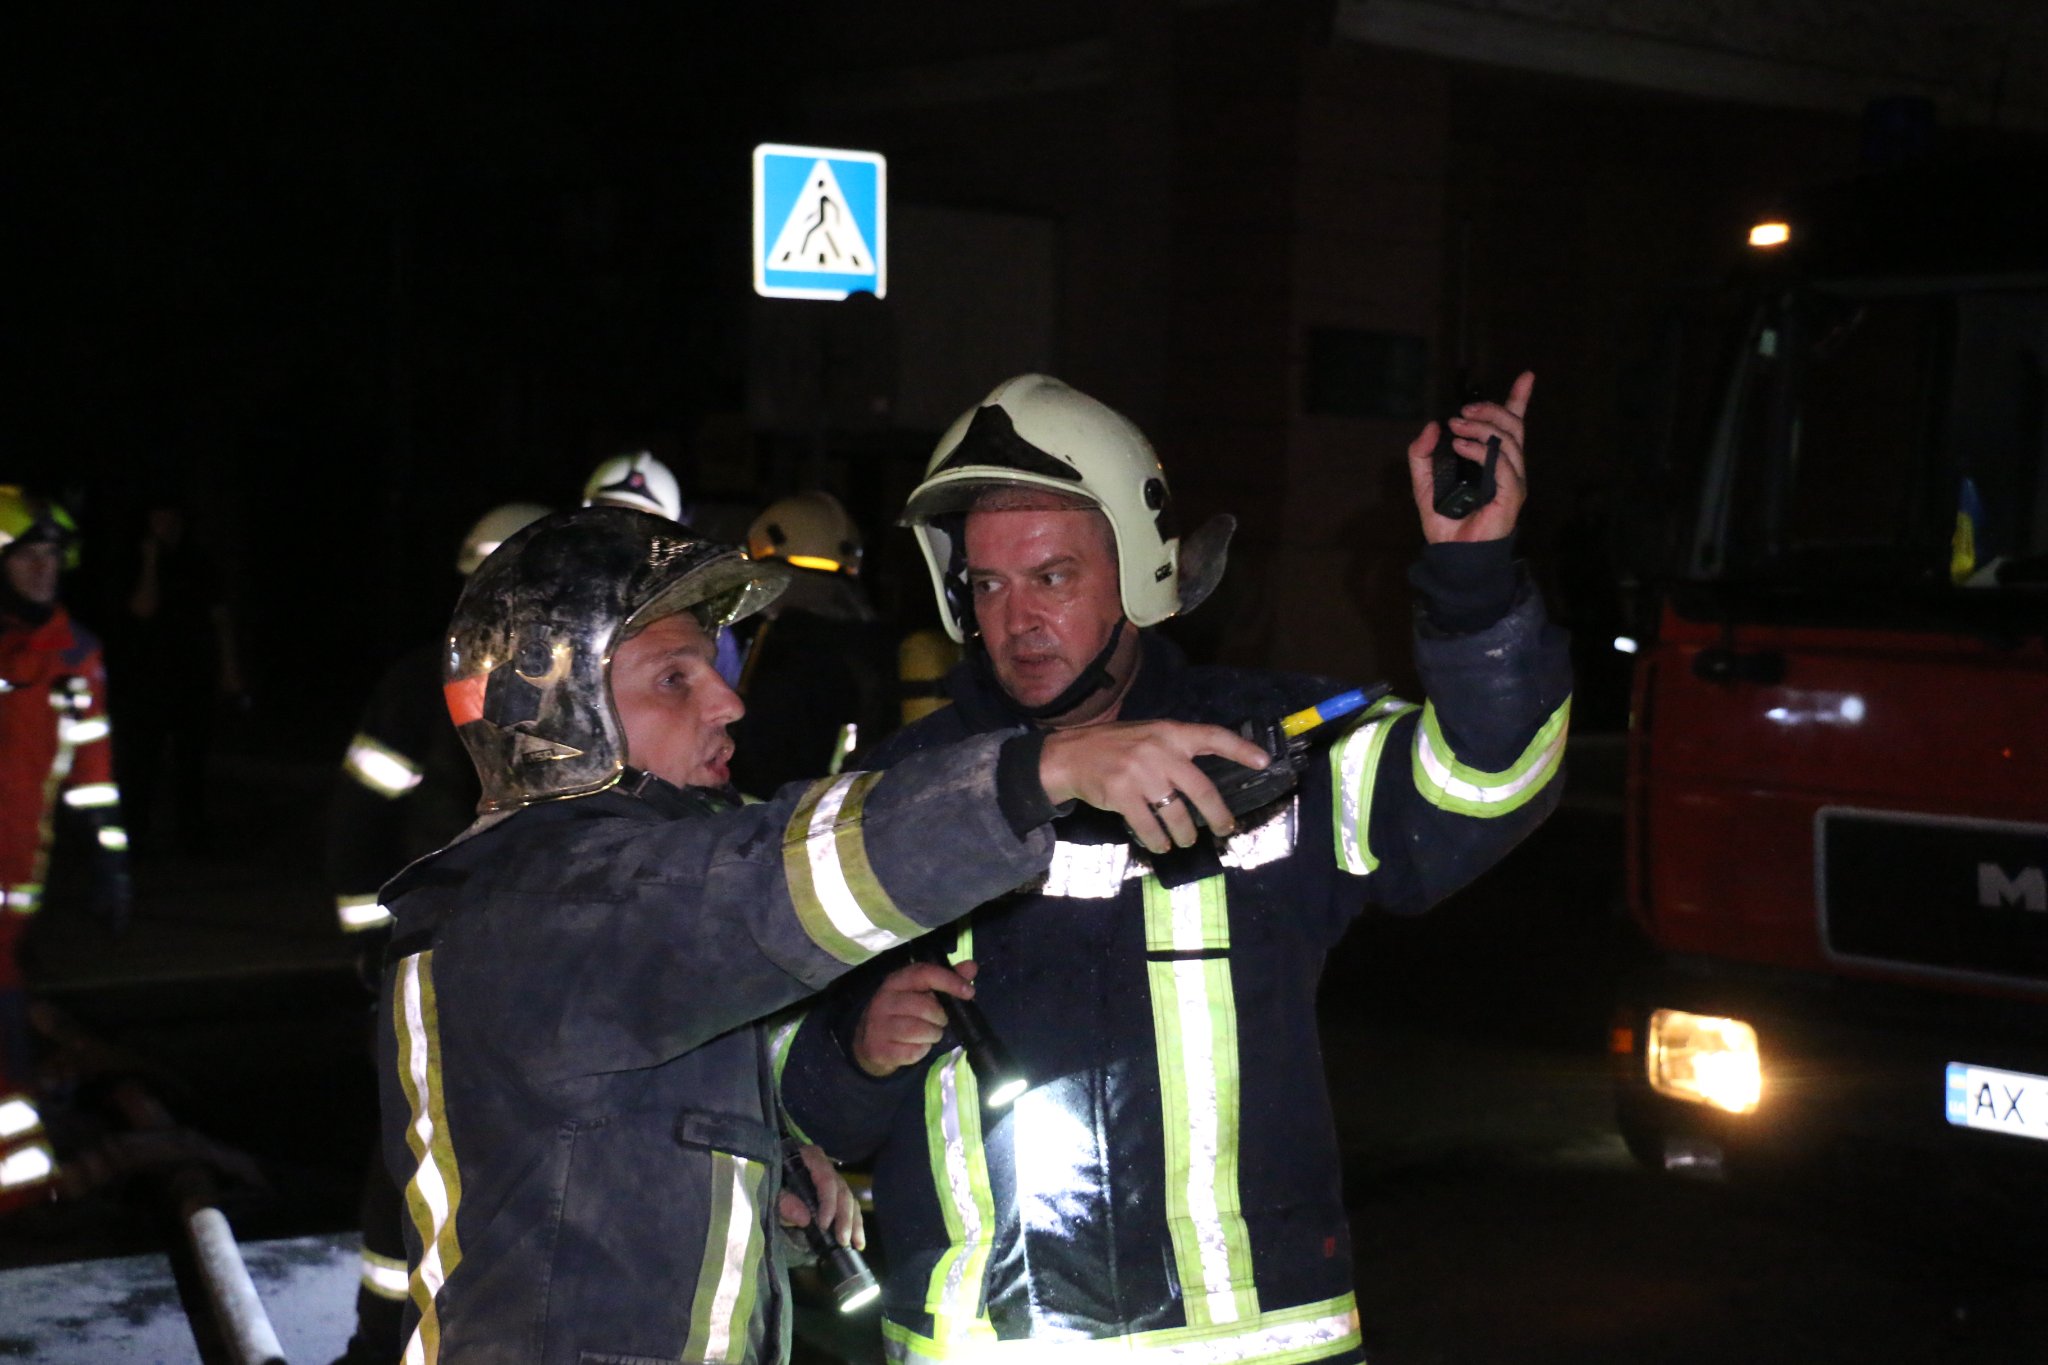 Пожарные оперативно ликвидировали пожар в жилом доме в Центре Харькова в ночь на 24 августа 